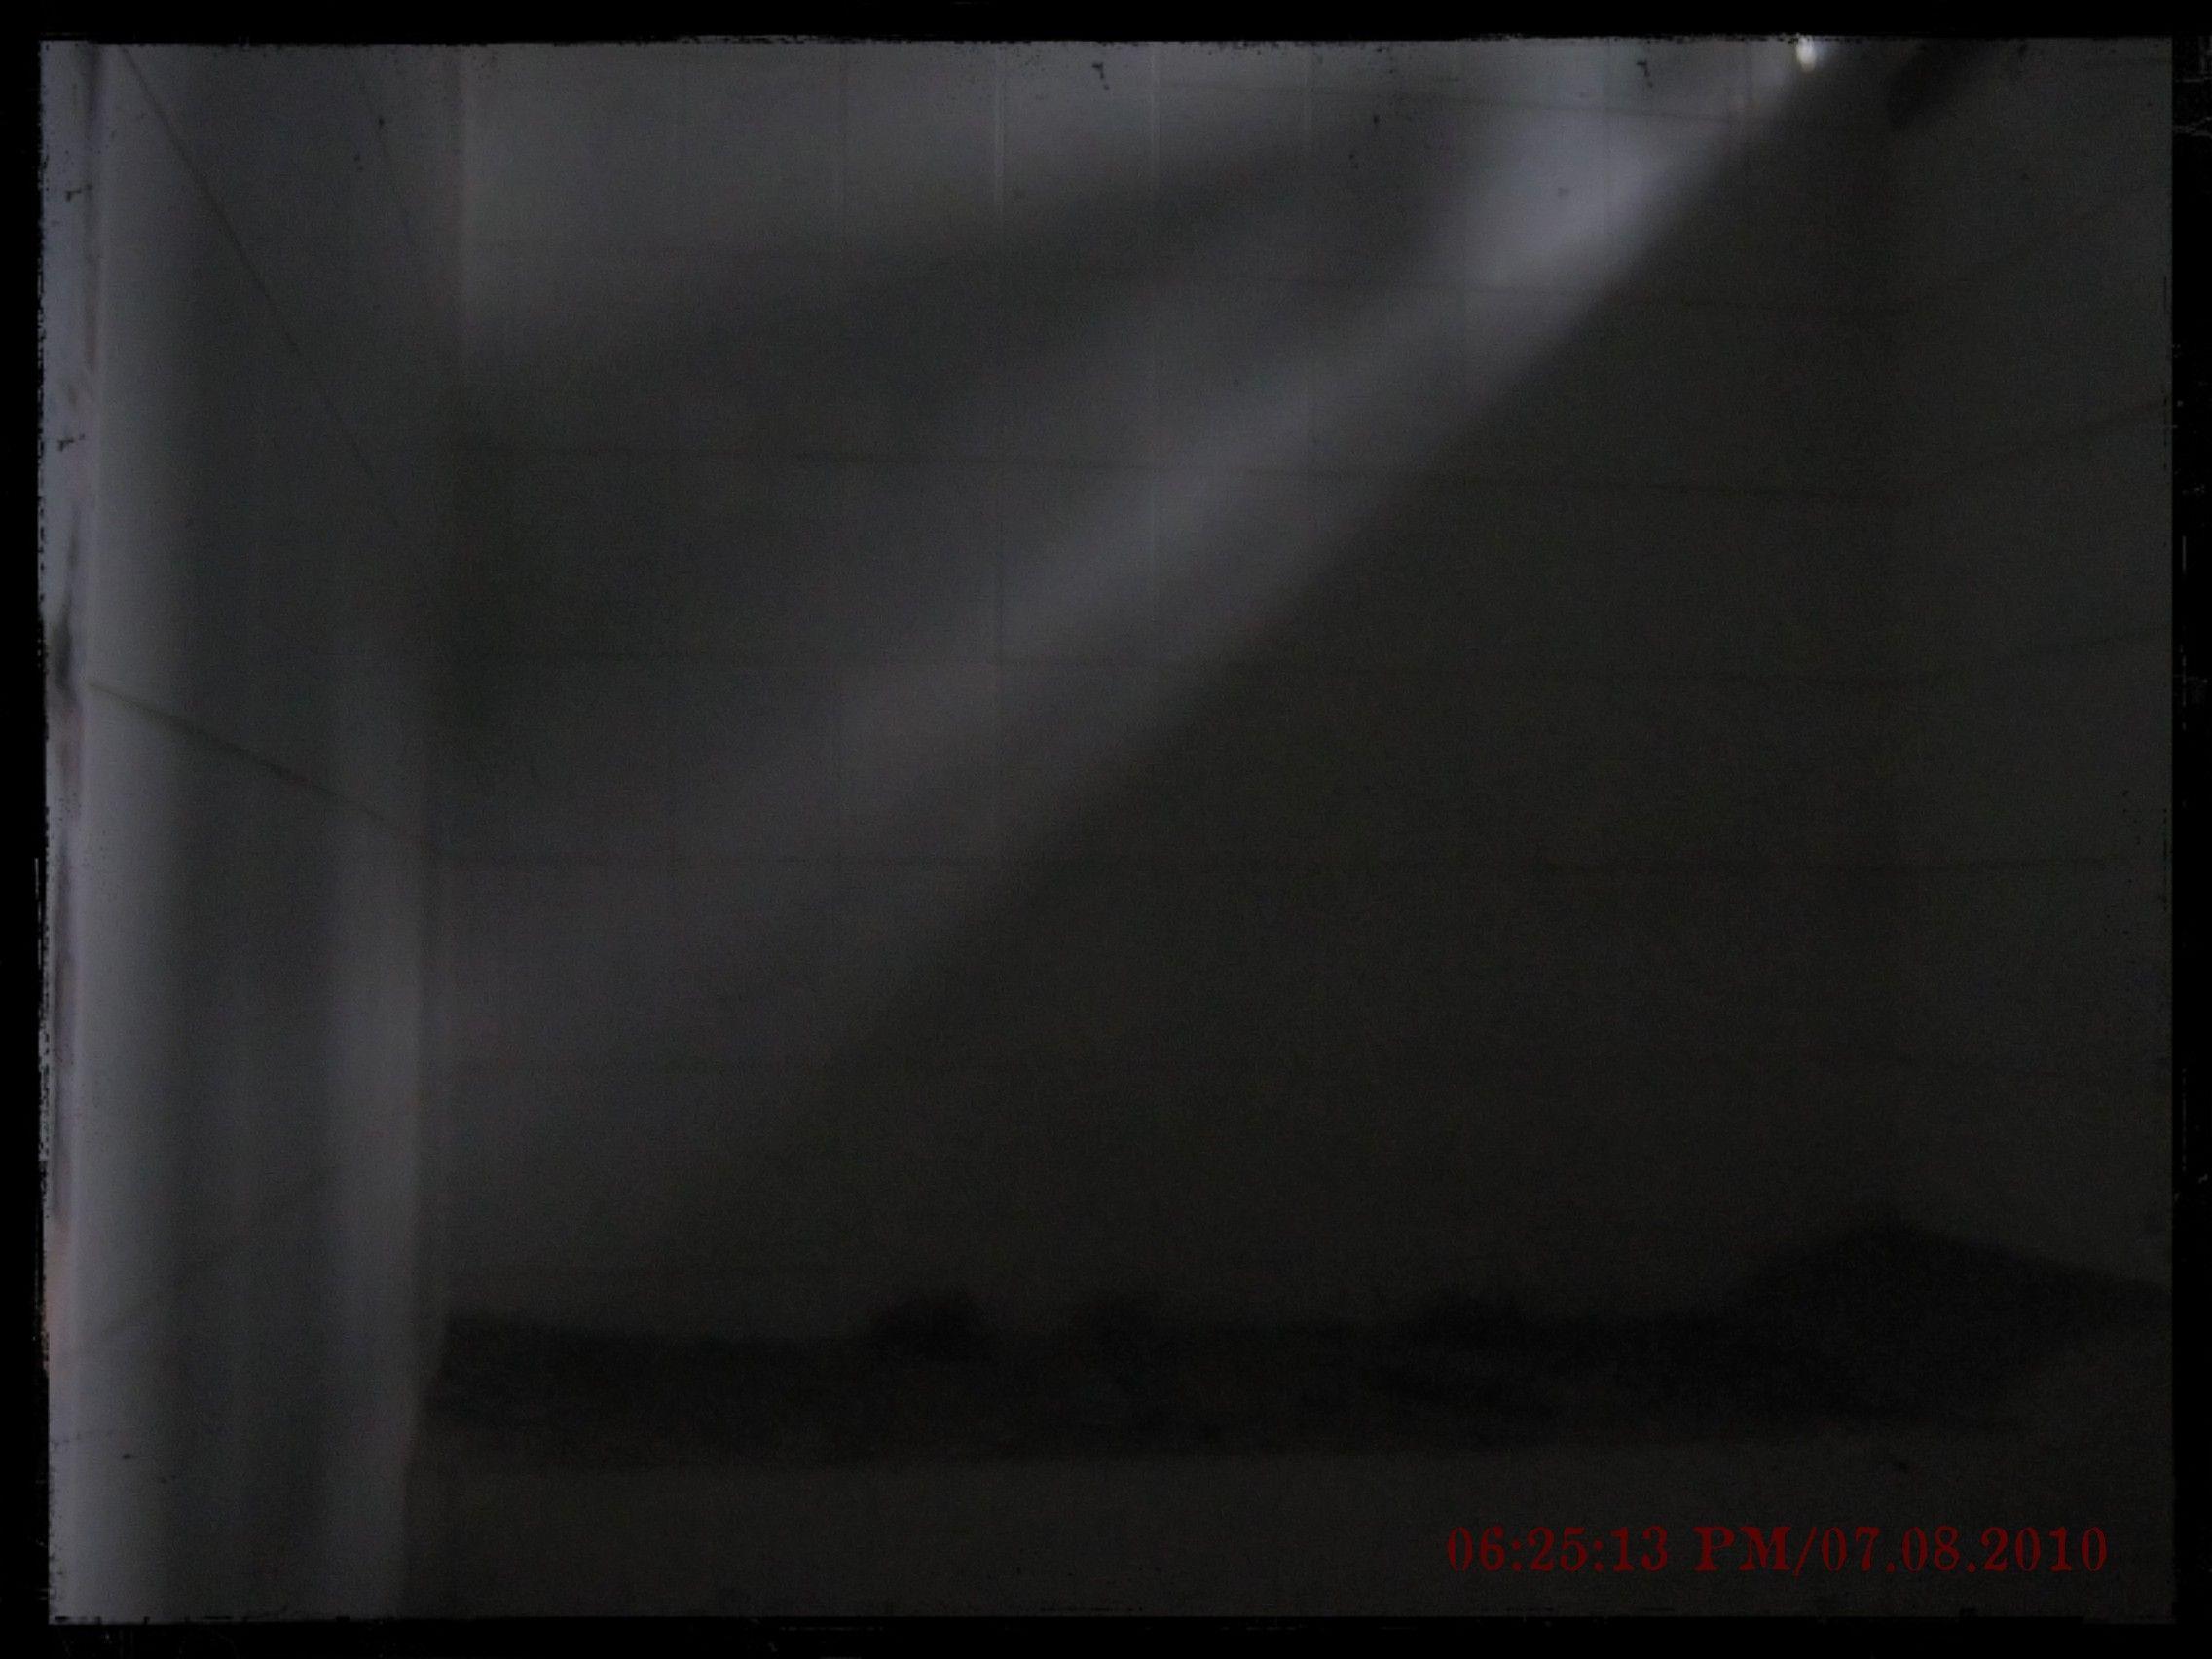 Houses: Dark Room Old Scary Light Wallpaper For Desktop for HD 16:9